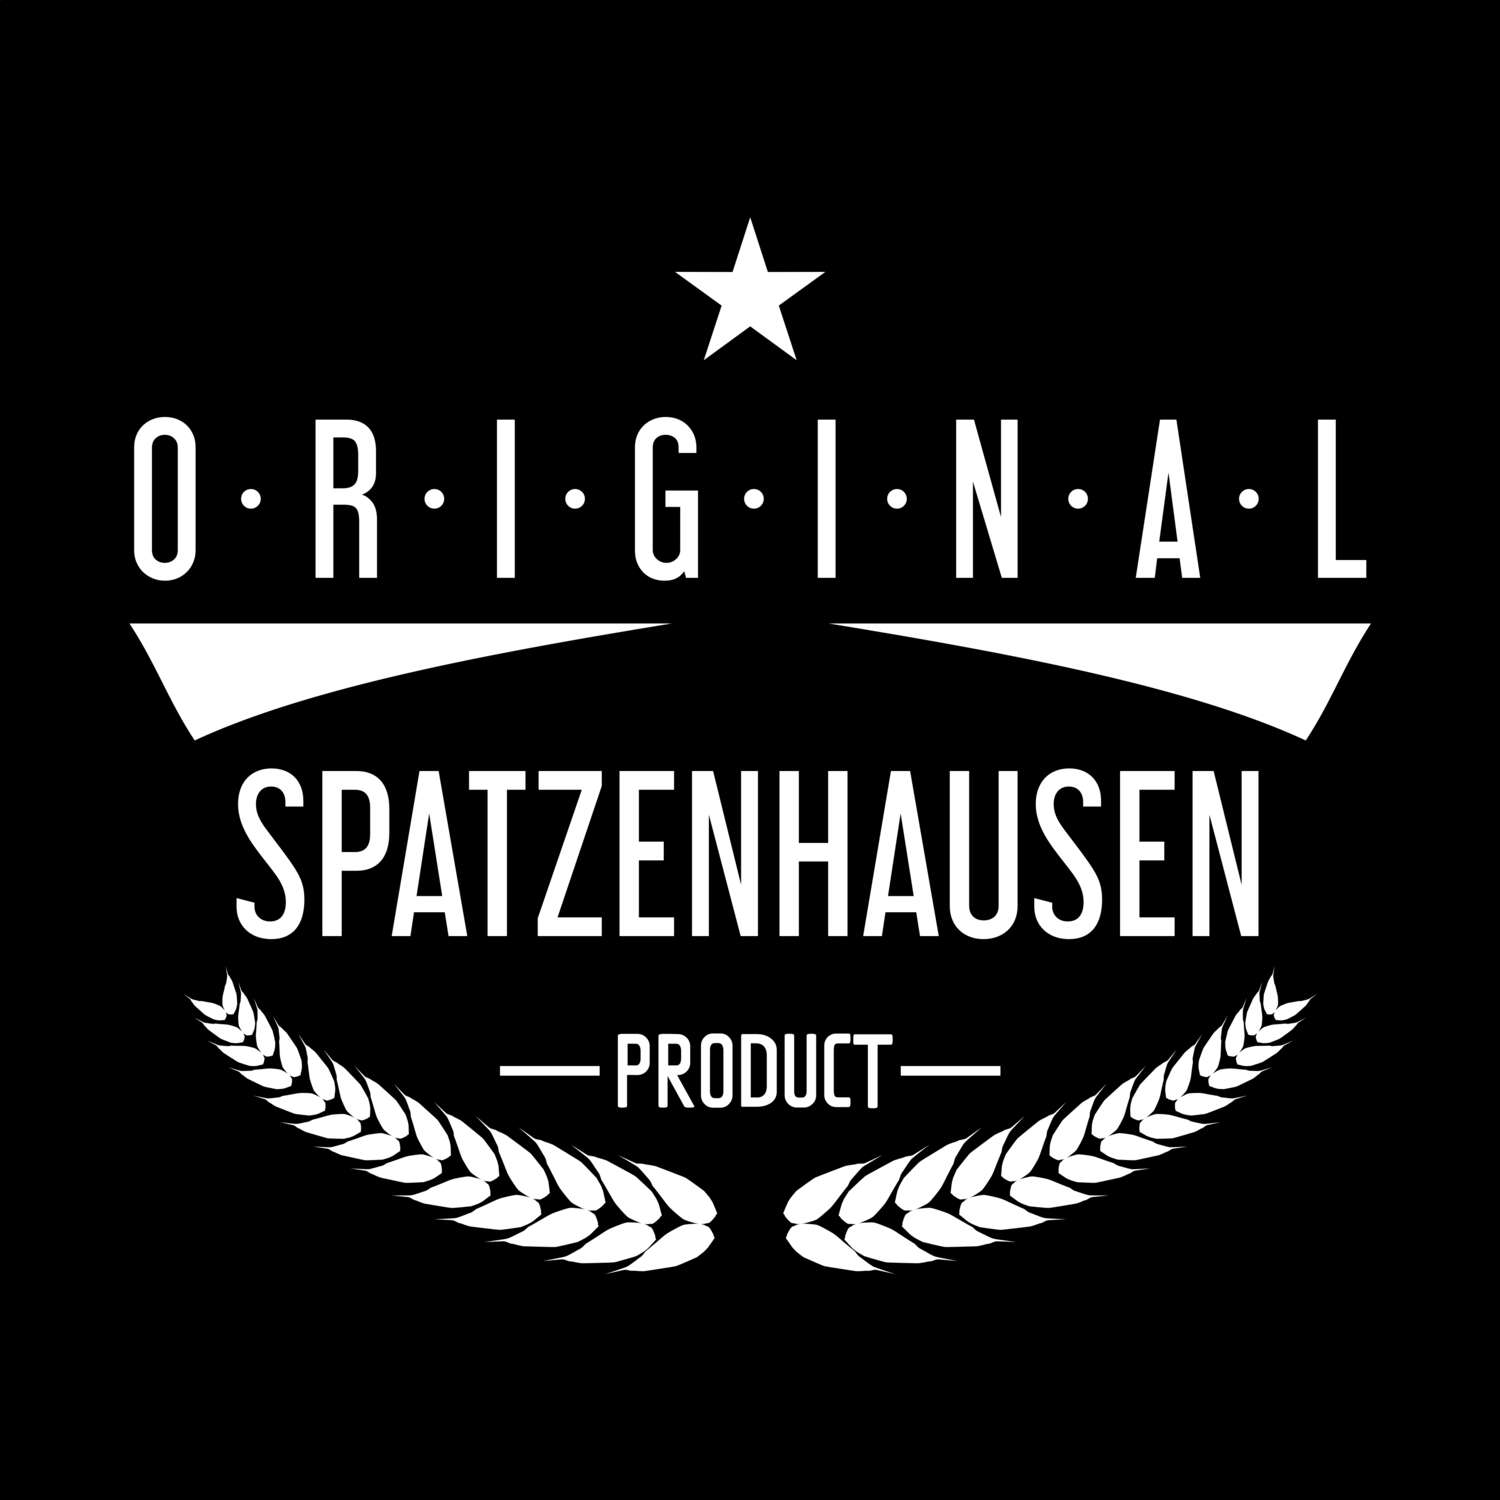 Spatzenhausen T-Shirt »Original Product«